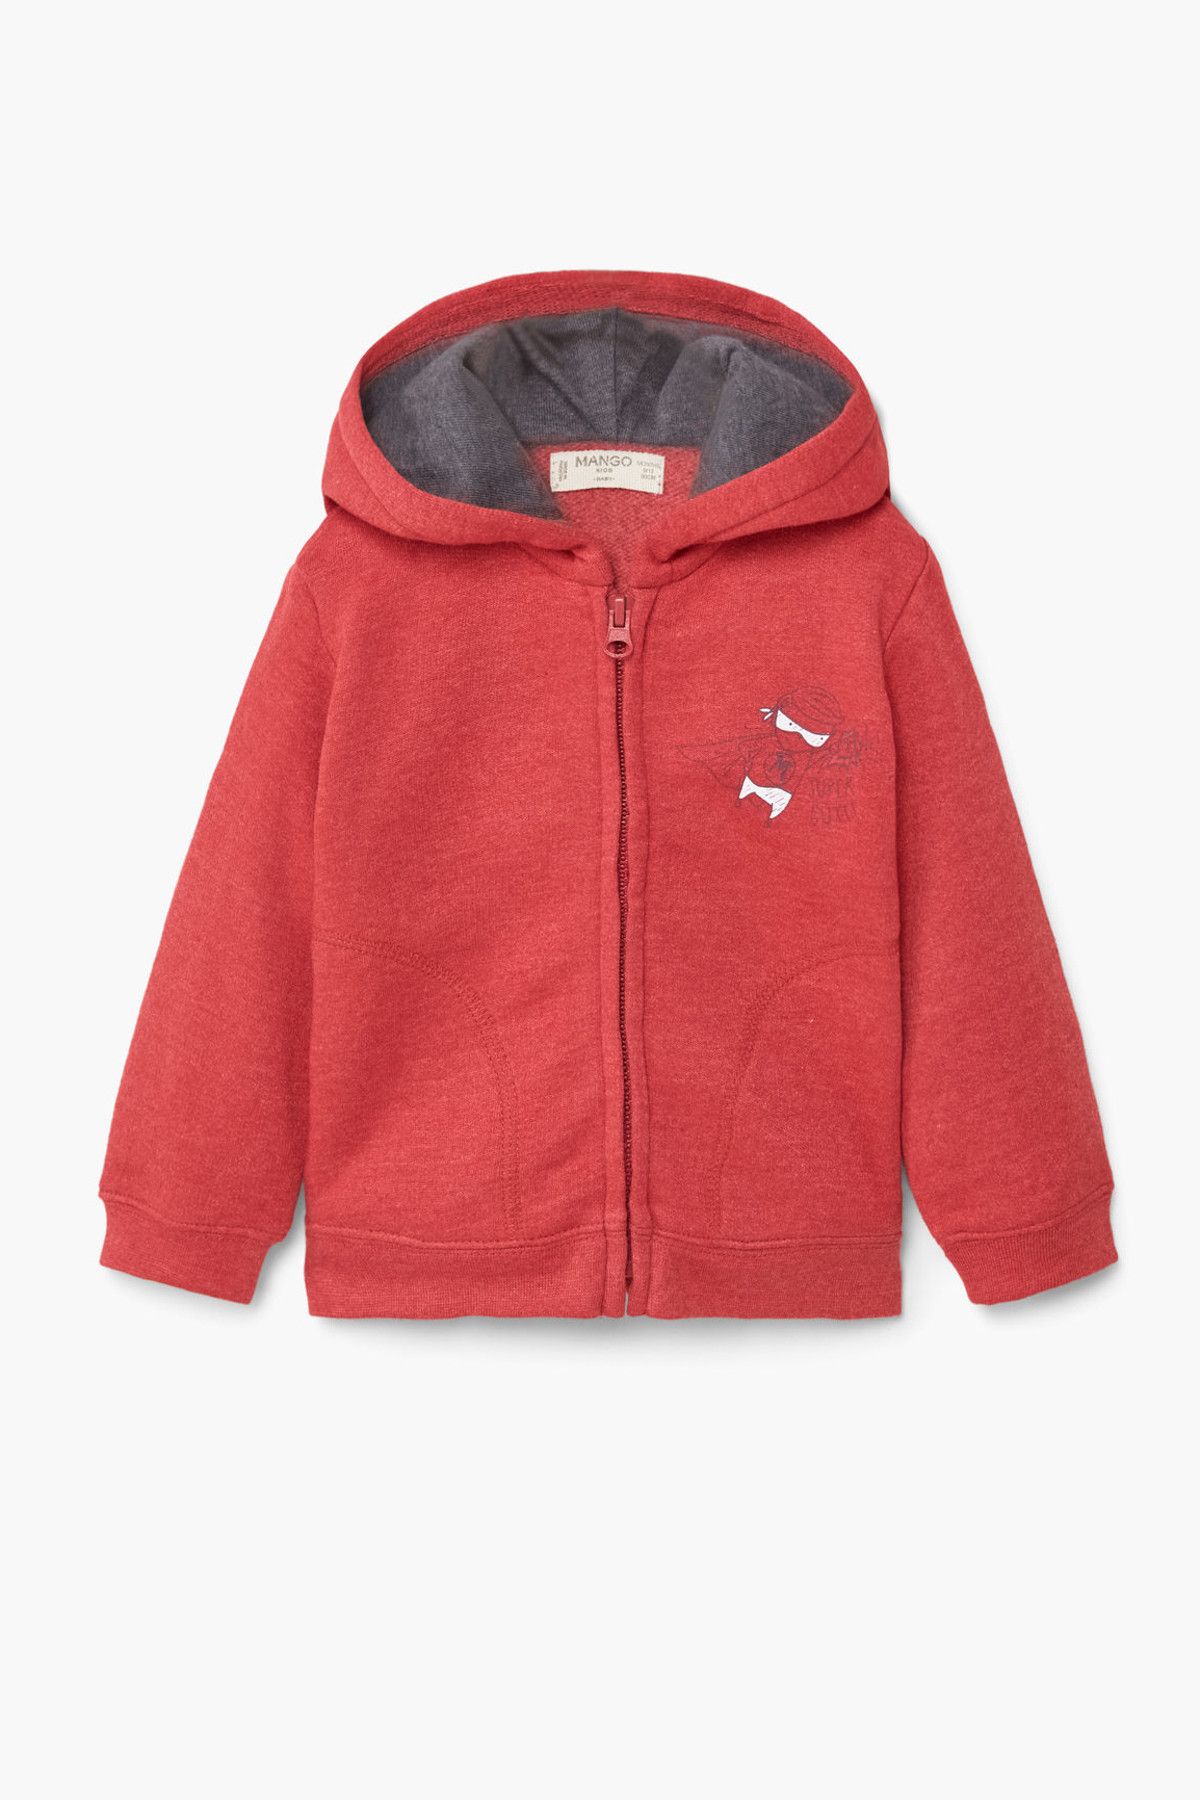 MANGO Baby Kırmızı Erkek Bebek Sweatshirt 73063007